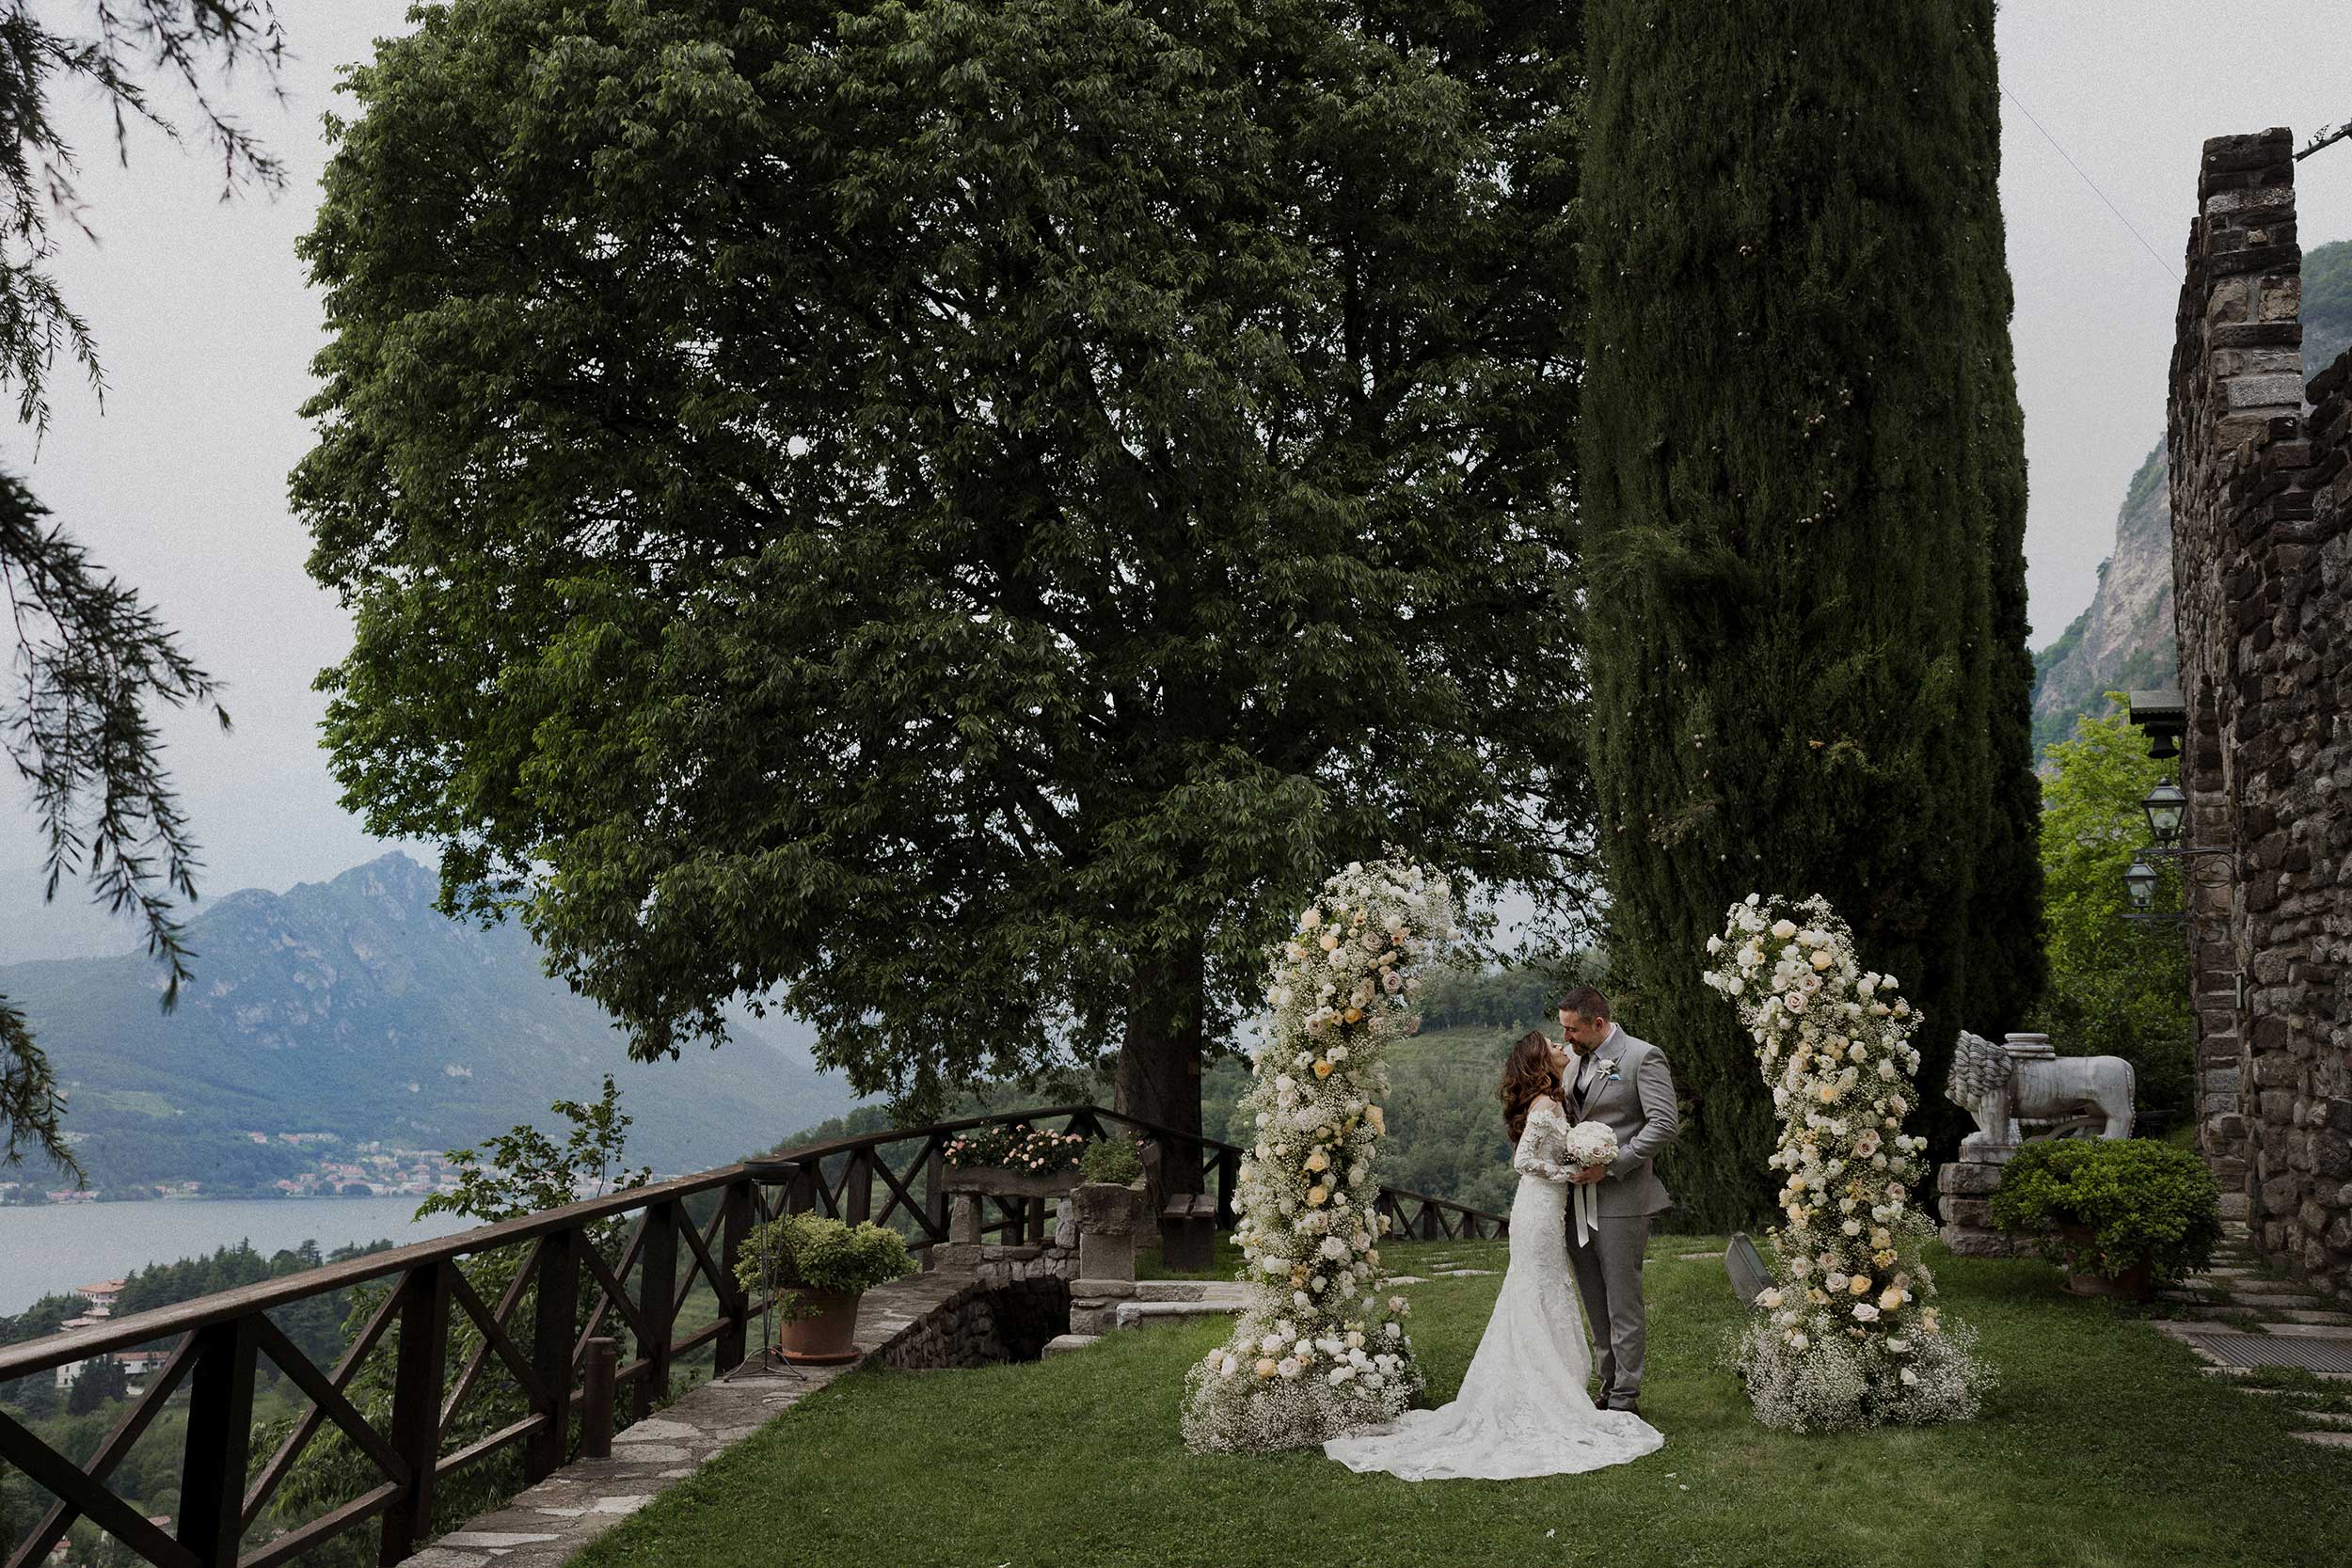 location matrimoni,locations matrimoni,location matrimoni lago di como,location matrimoni lago maggiore,location per matrimoni